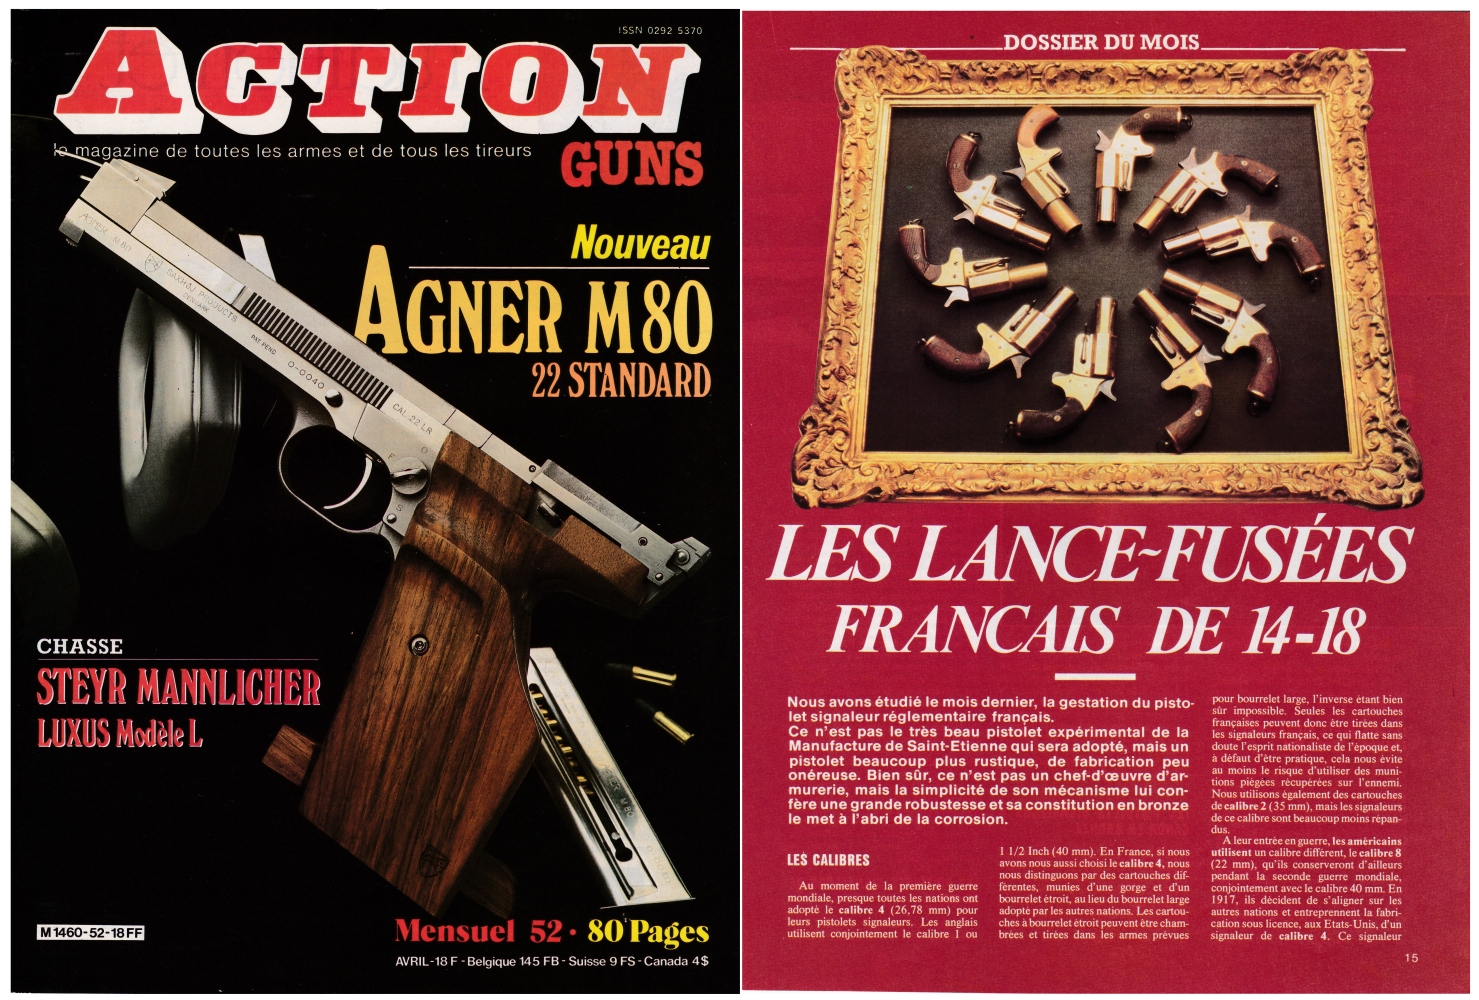 Les pistolets signaleurs français de 14-18 (2ème partie) ont fait l'objet d'une publication sur 4 pages dans le magazine Action Guns N°52 (avril 1983).